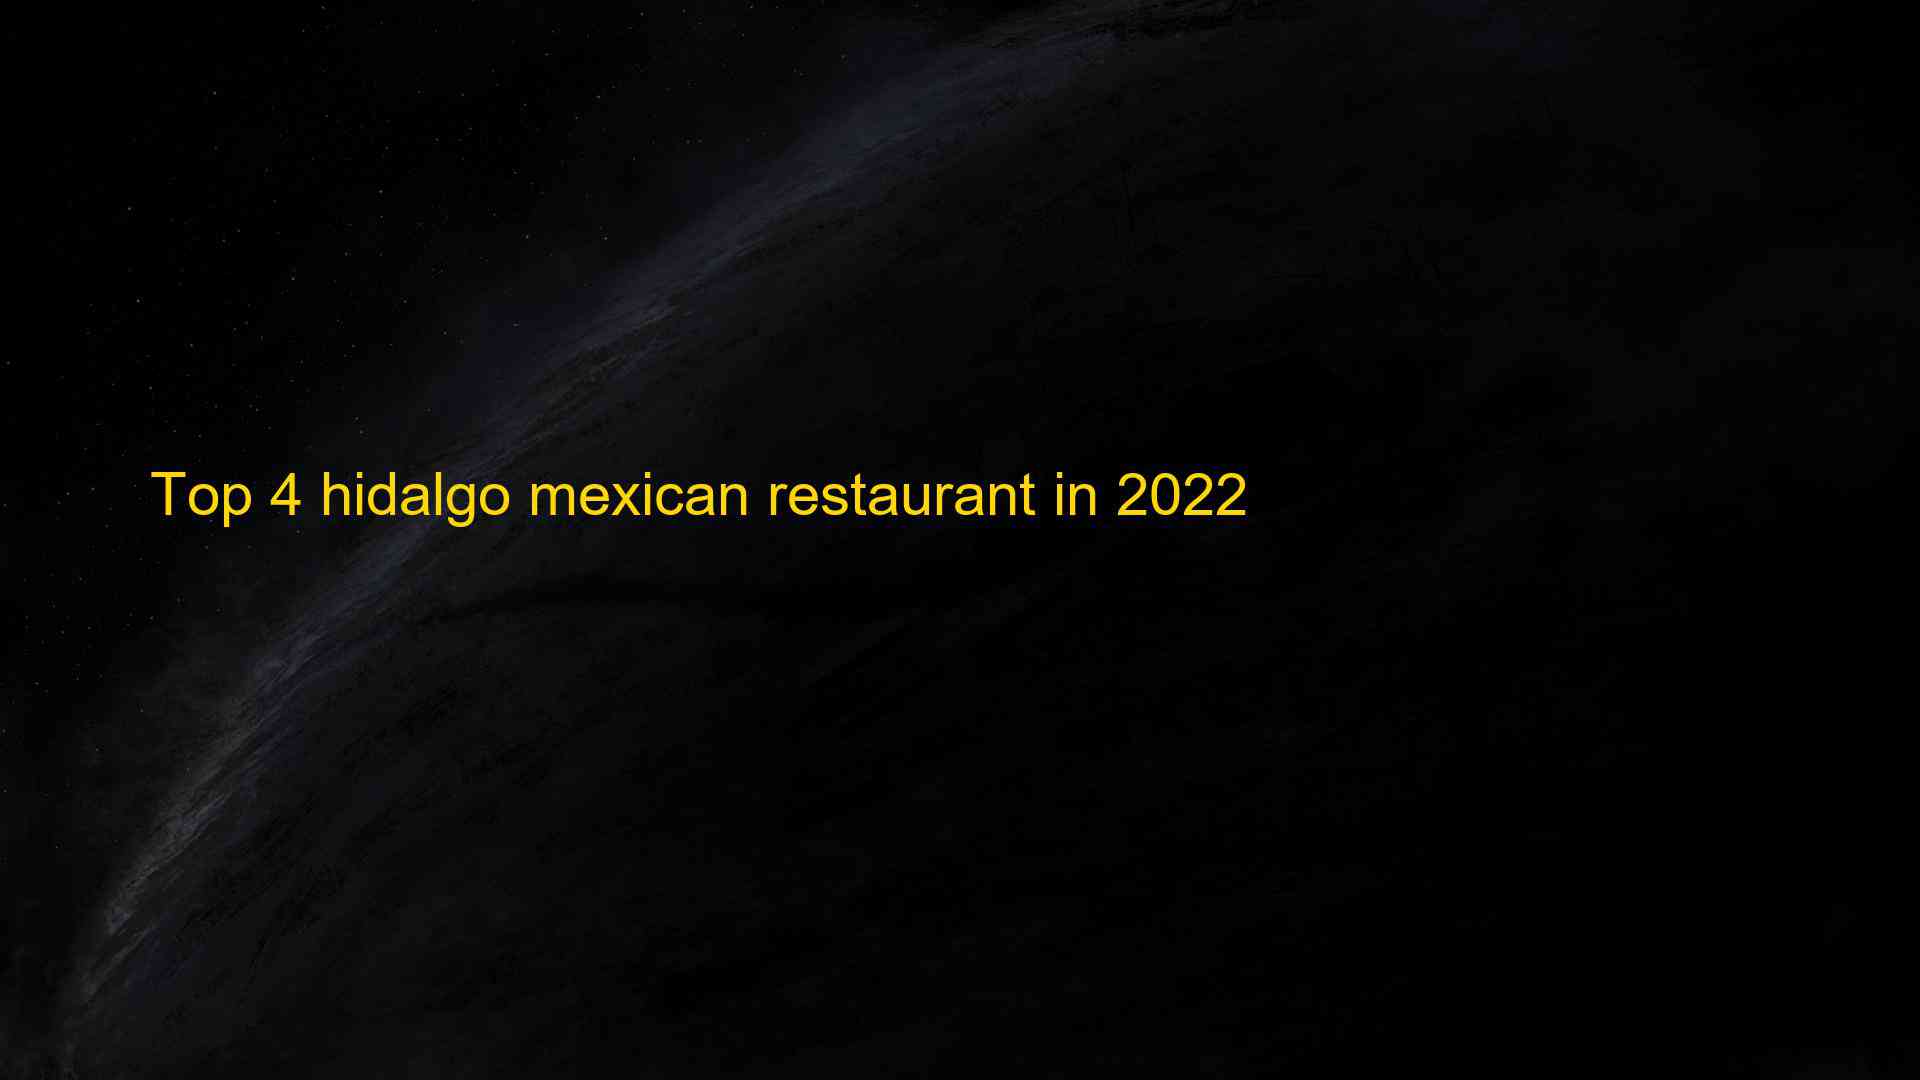 Top 4 hidalgo mexican restaurant in 2022 1662833185